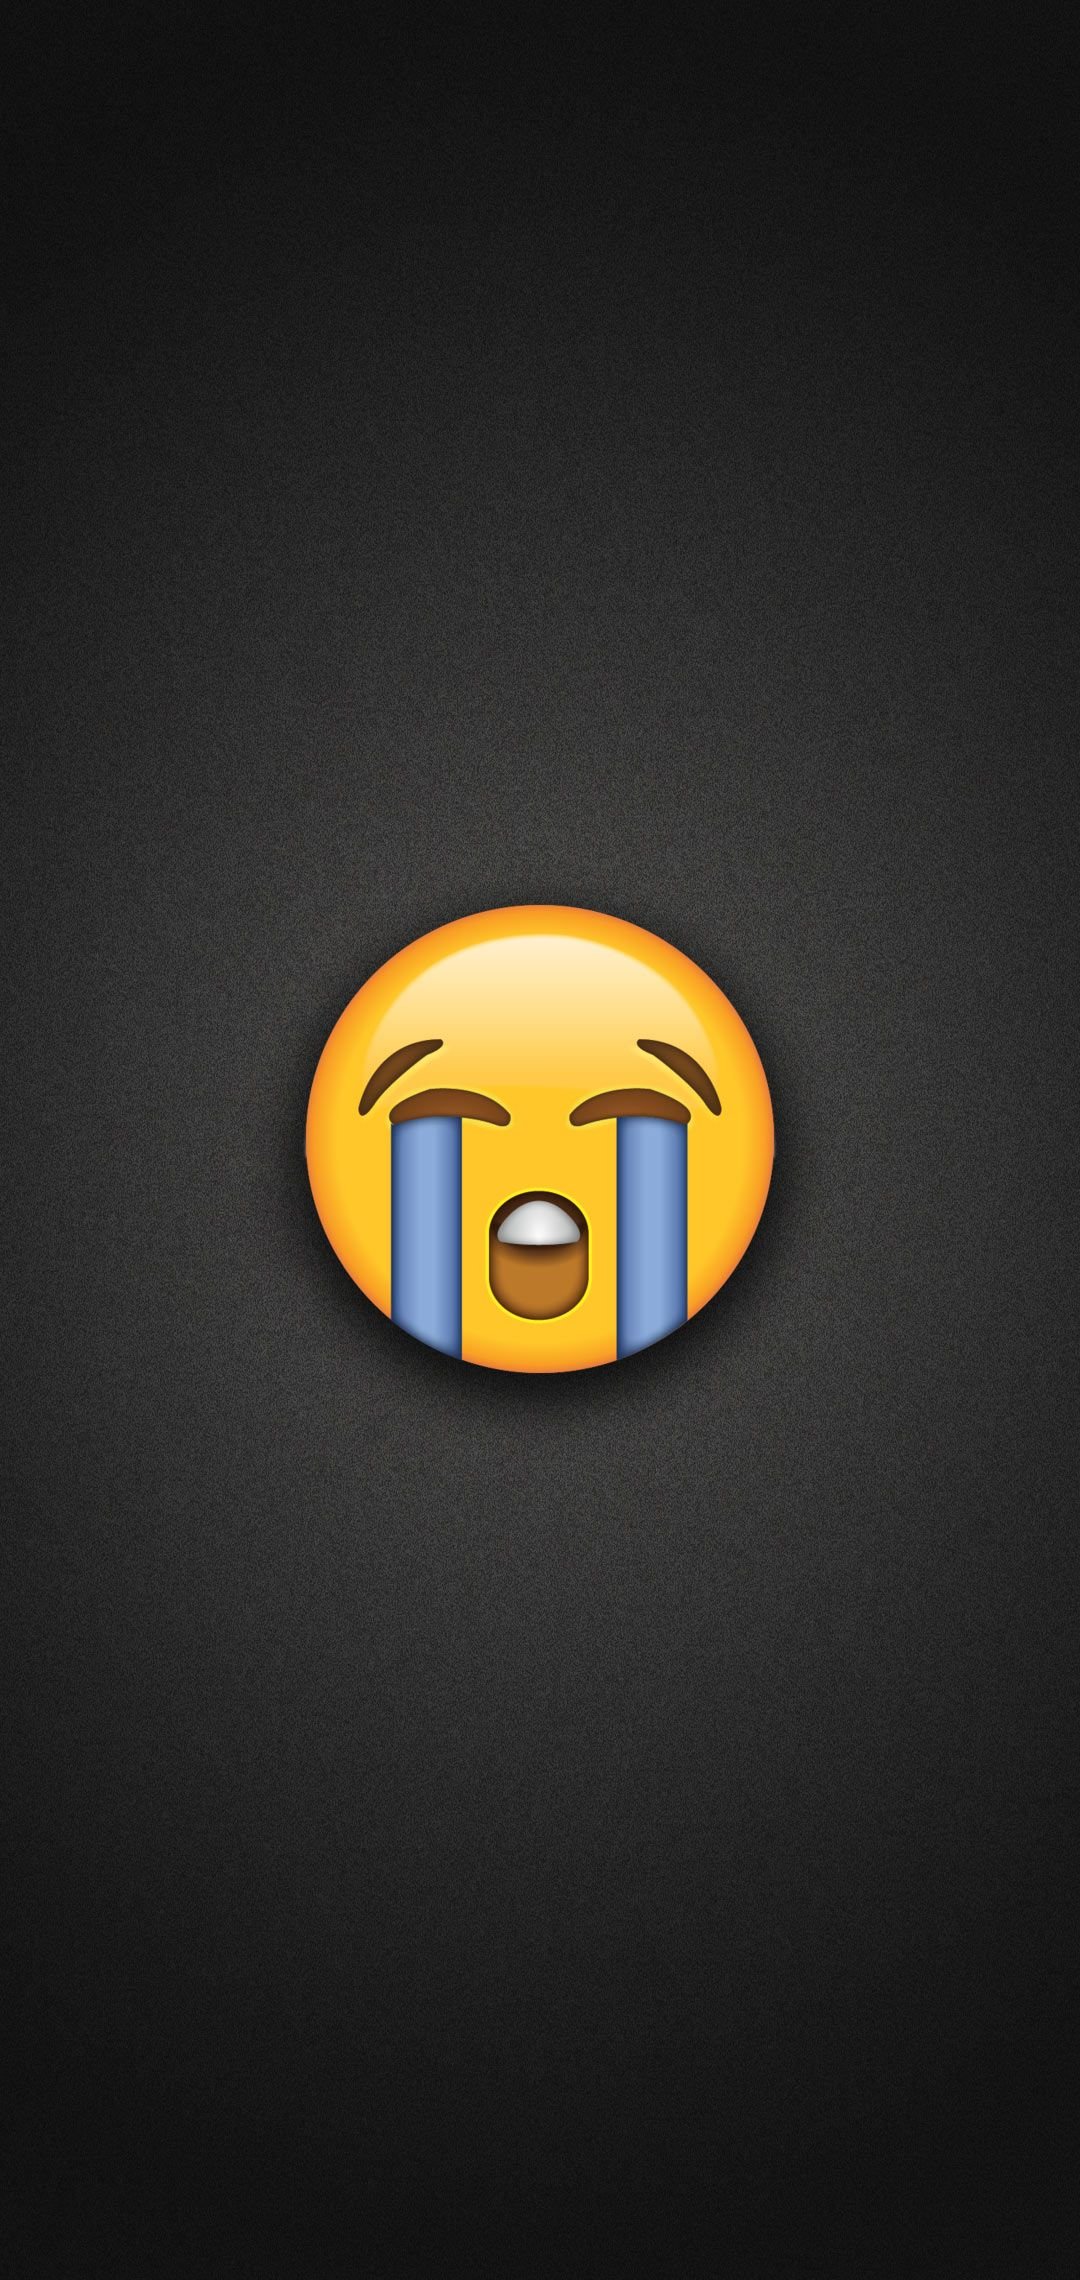 Loudly Crying Emoji